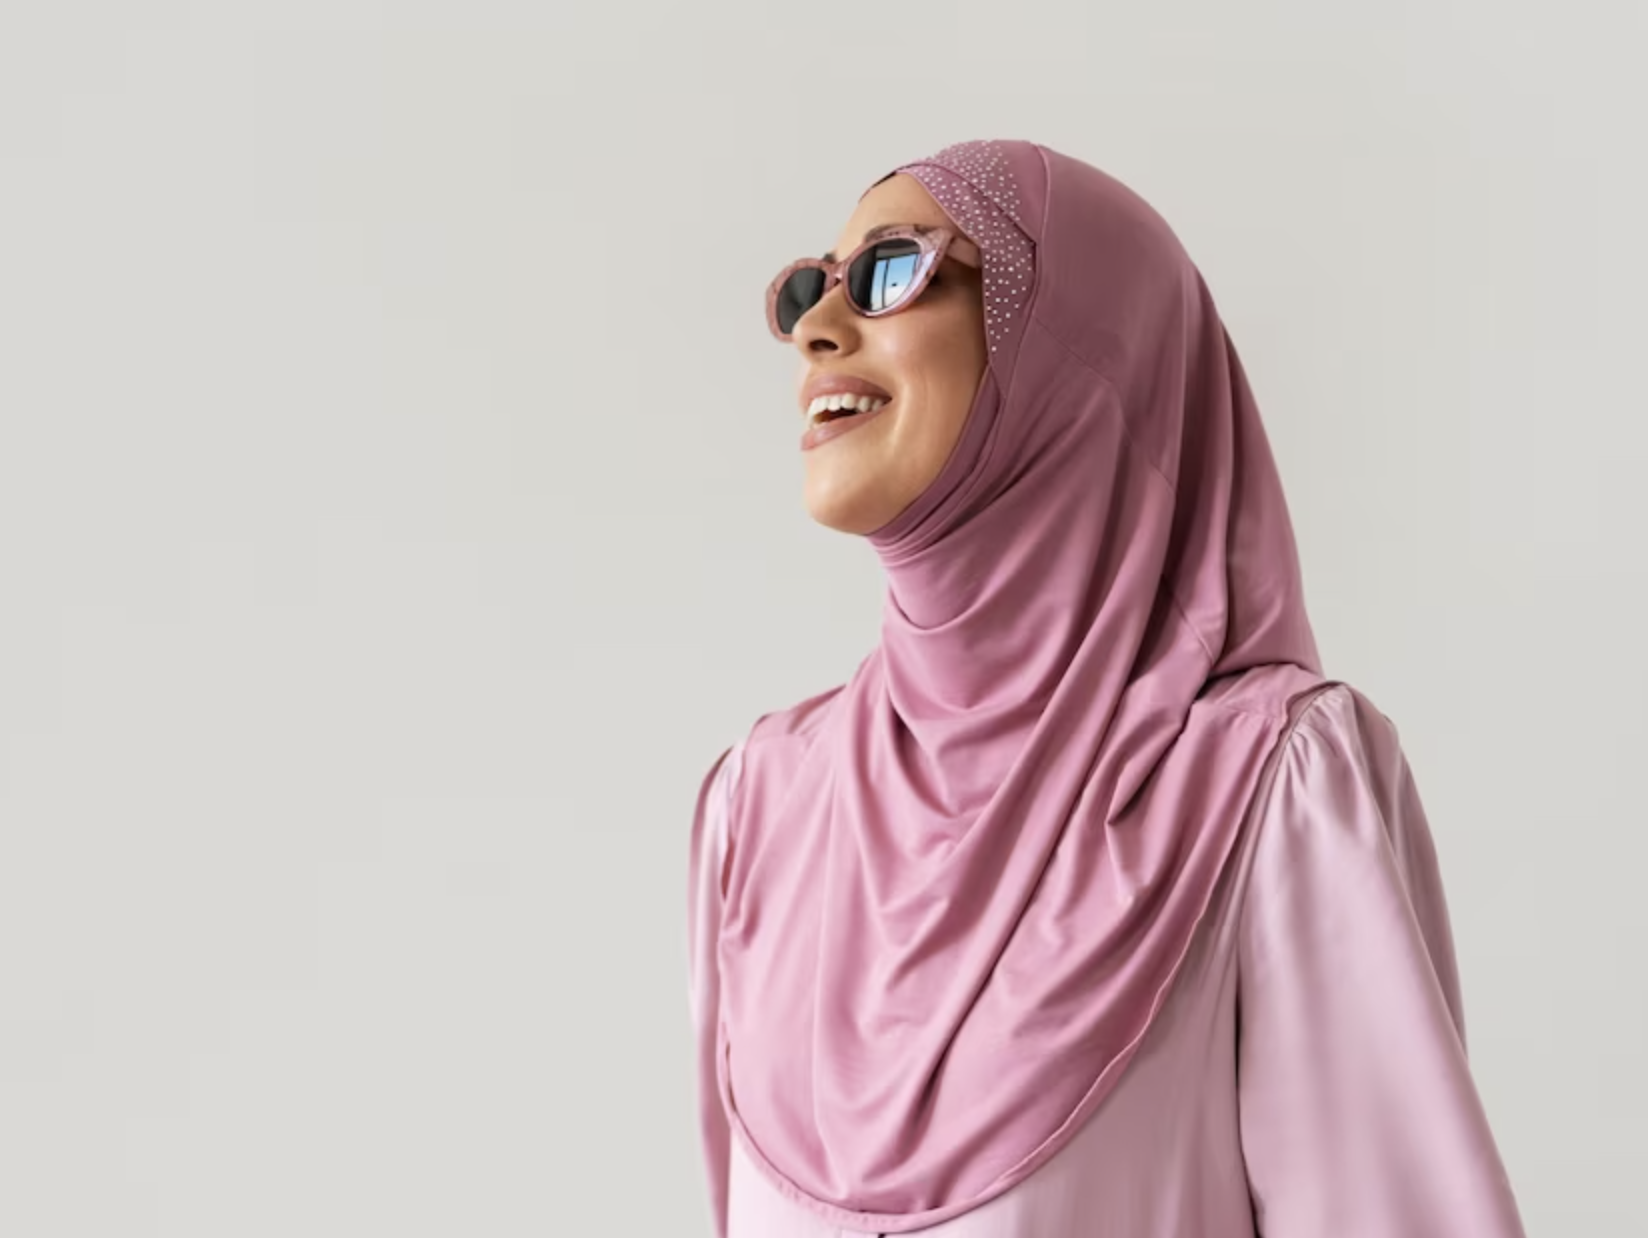 Tampil Beda dengan Jilbab Instan: Solusi Hijab Praktis untuk Wanita Aktif